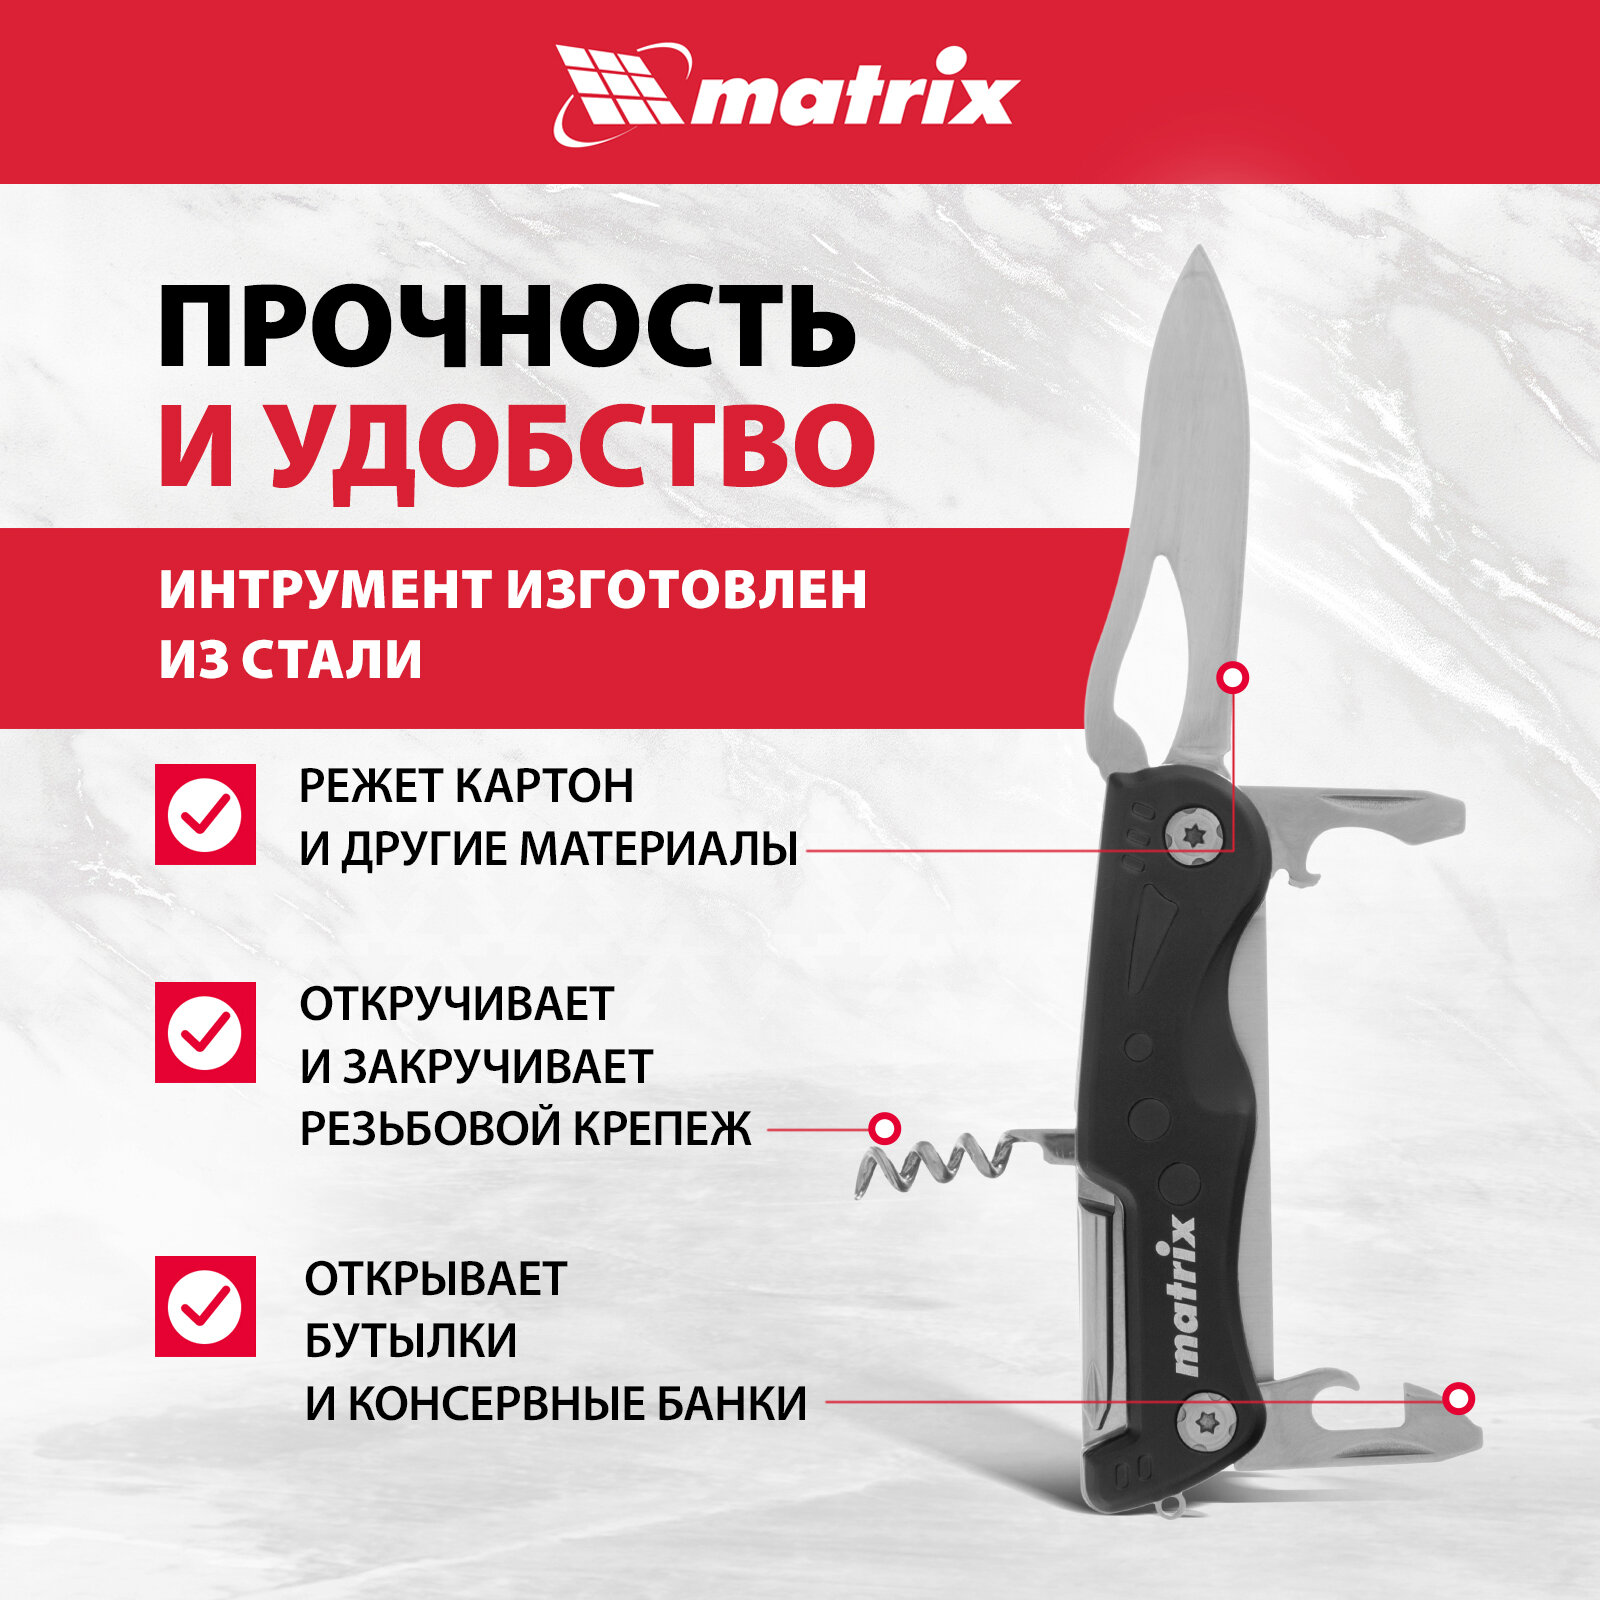 Нож строительный Matrix - фото №2